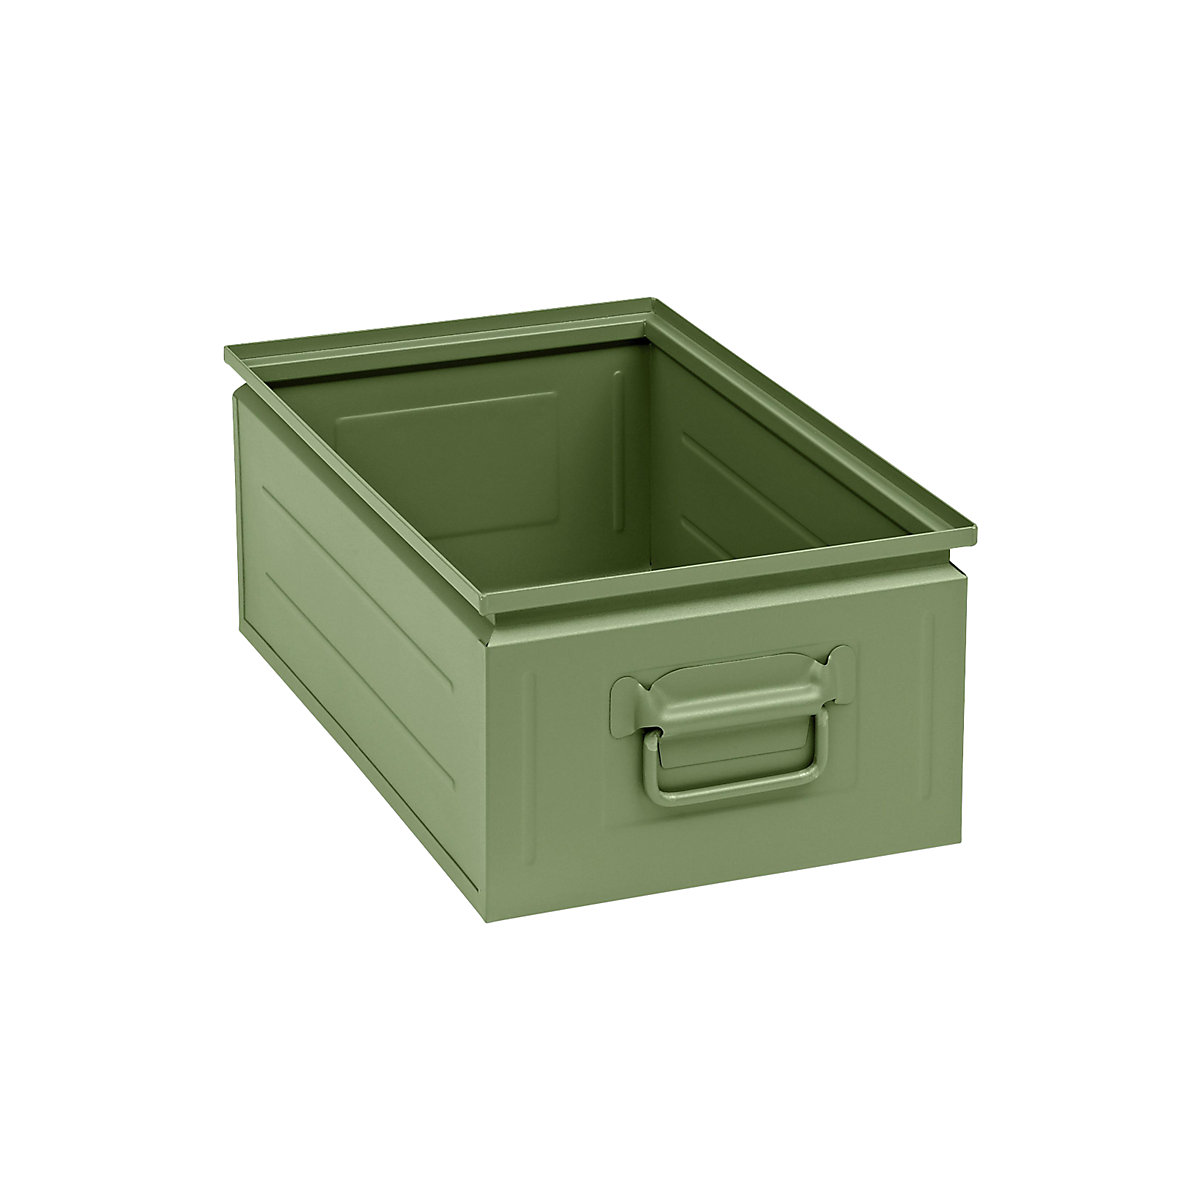 Kutija za slaganje od čeličnog lima, volumen otprilike 30 l, u rezeda zelenoj boji RAL 6011